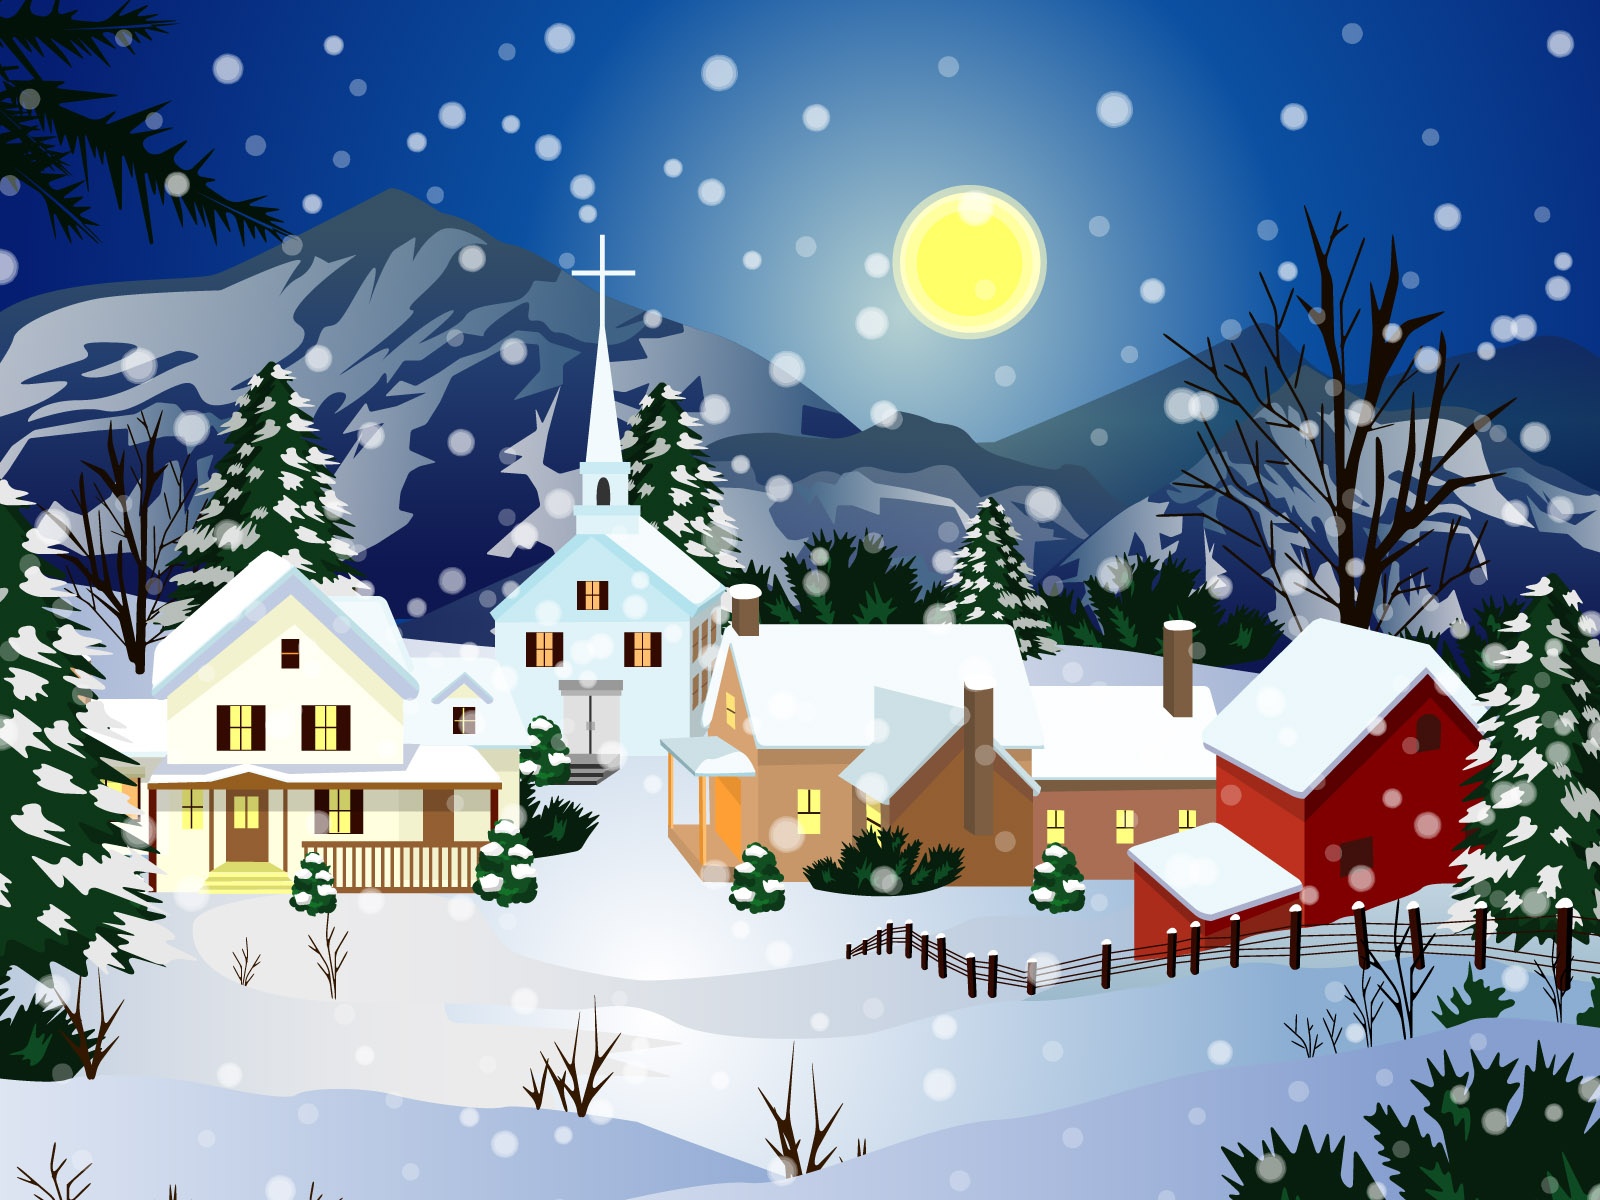 Fond ecran : Village sous la neige de Noel - Id : 3923 - Rubrique de l ...